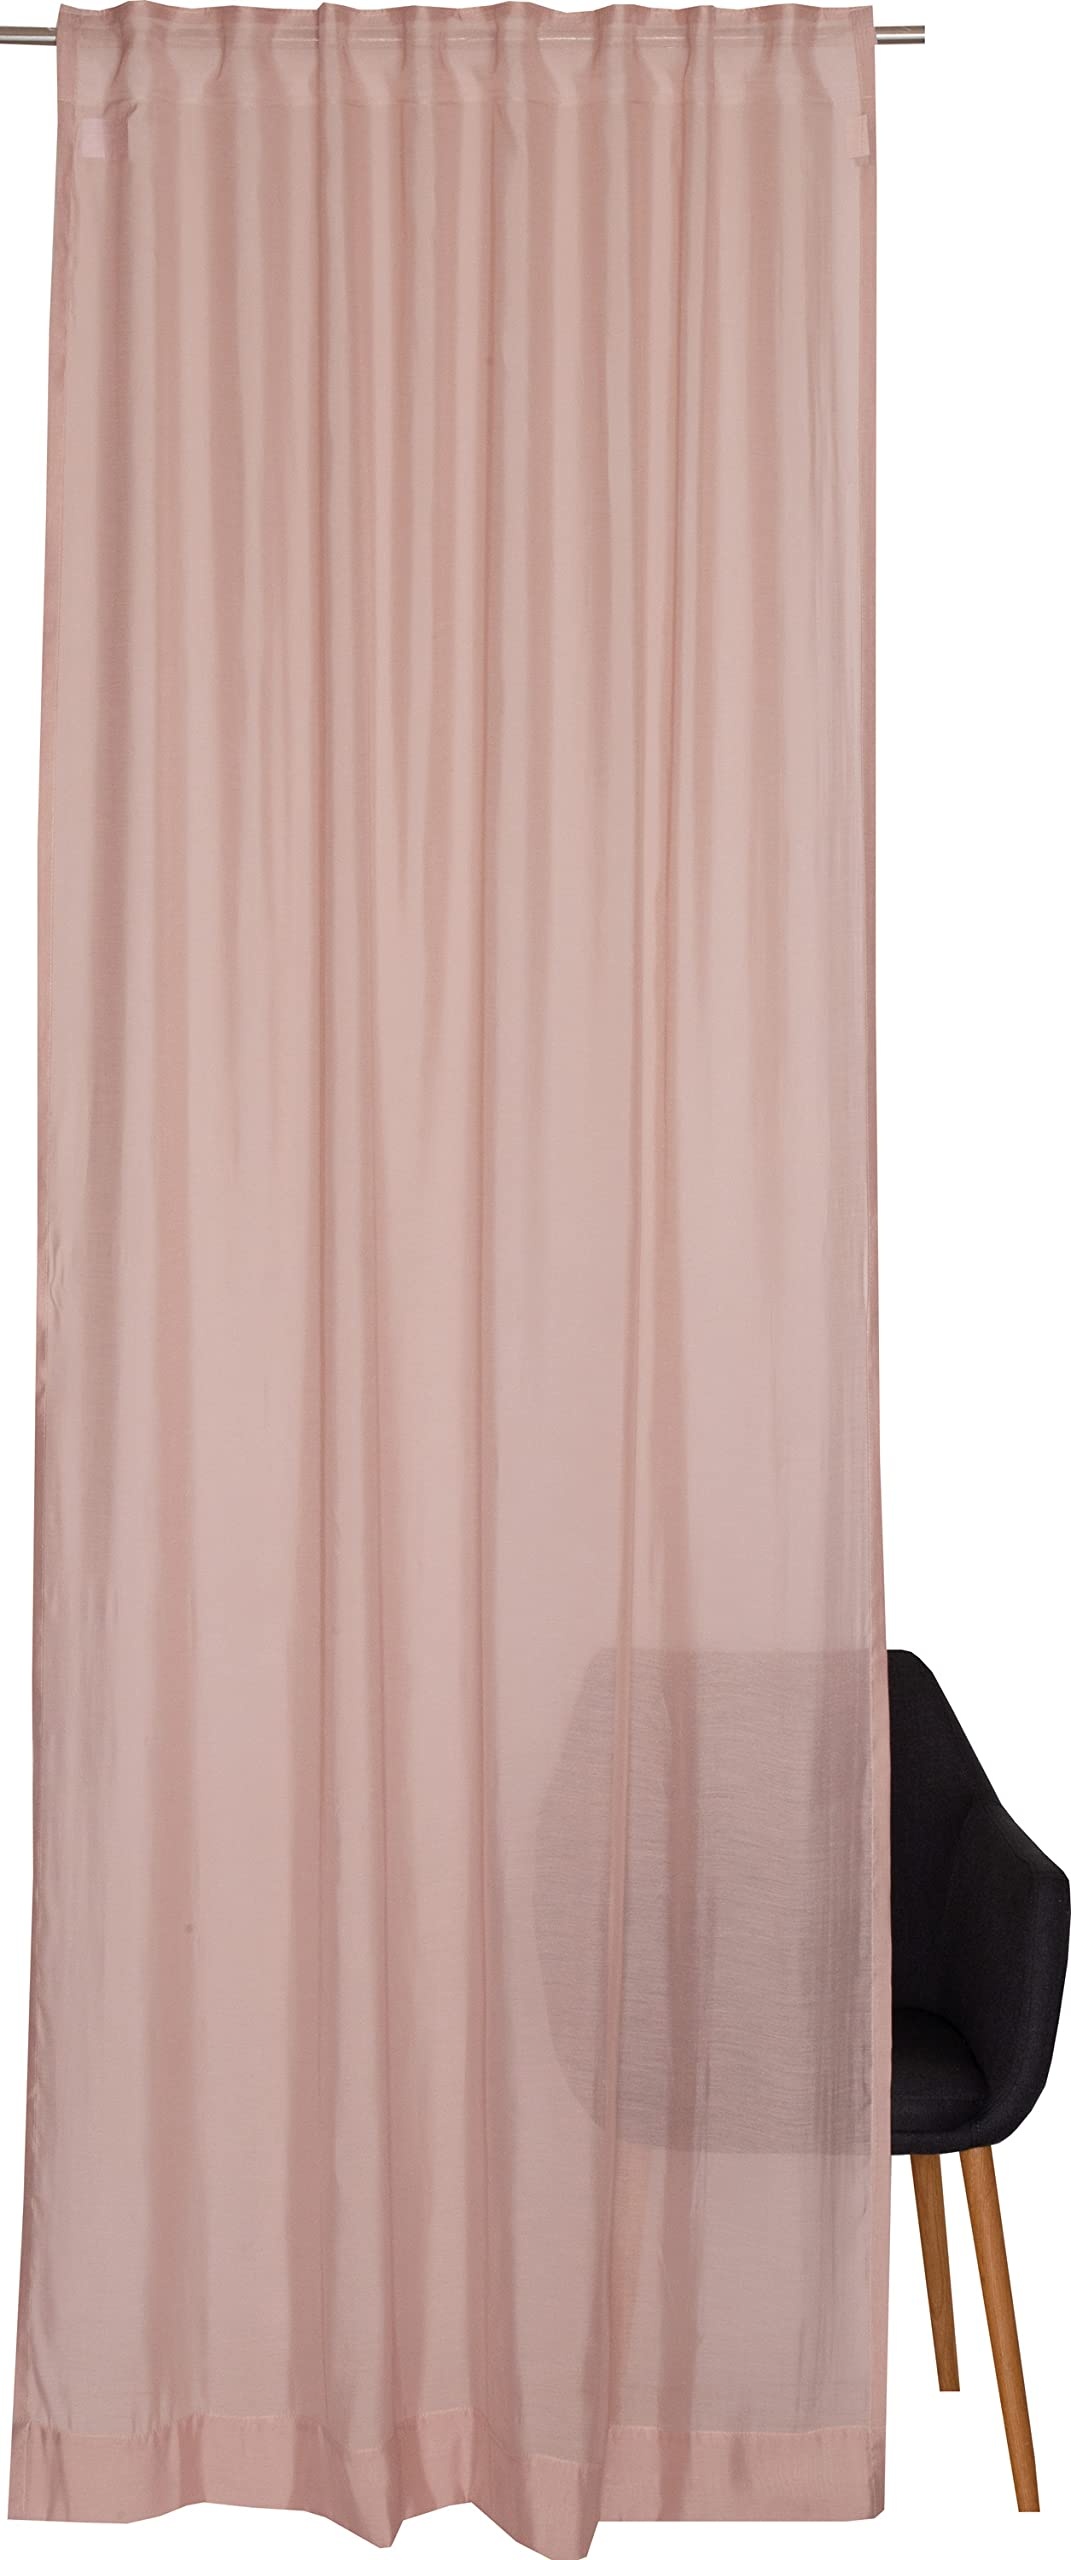 Schöner Wohnen Kollektion Gardine Solid 130x250 - Vorhang halbtransparent Rose - Vorhänge Wohnzimmer - Dekoschal - Curtains